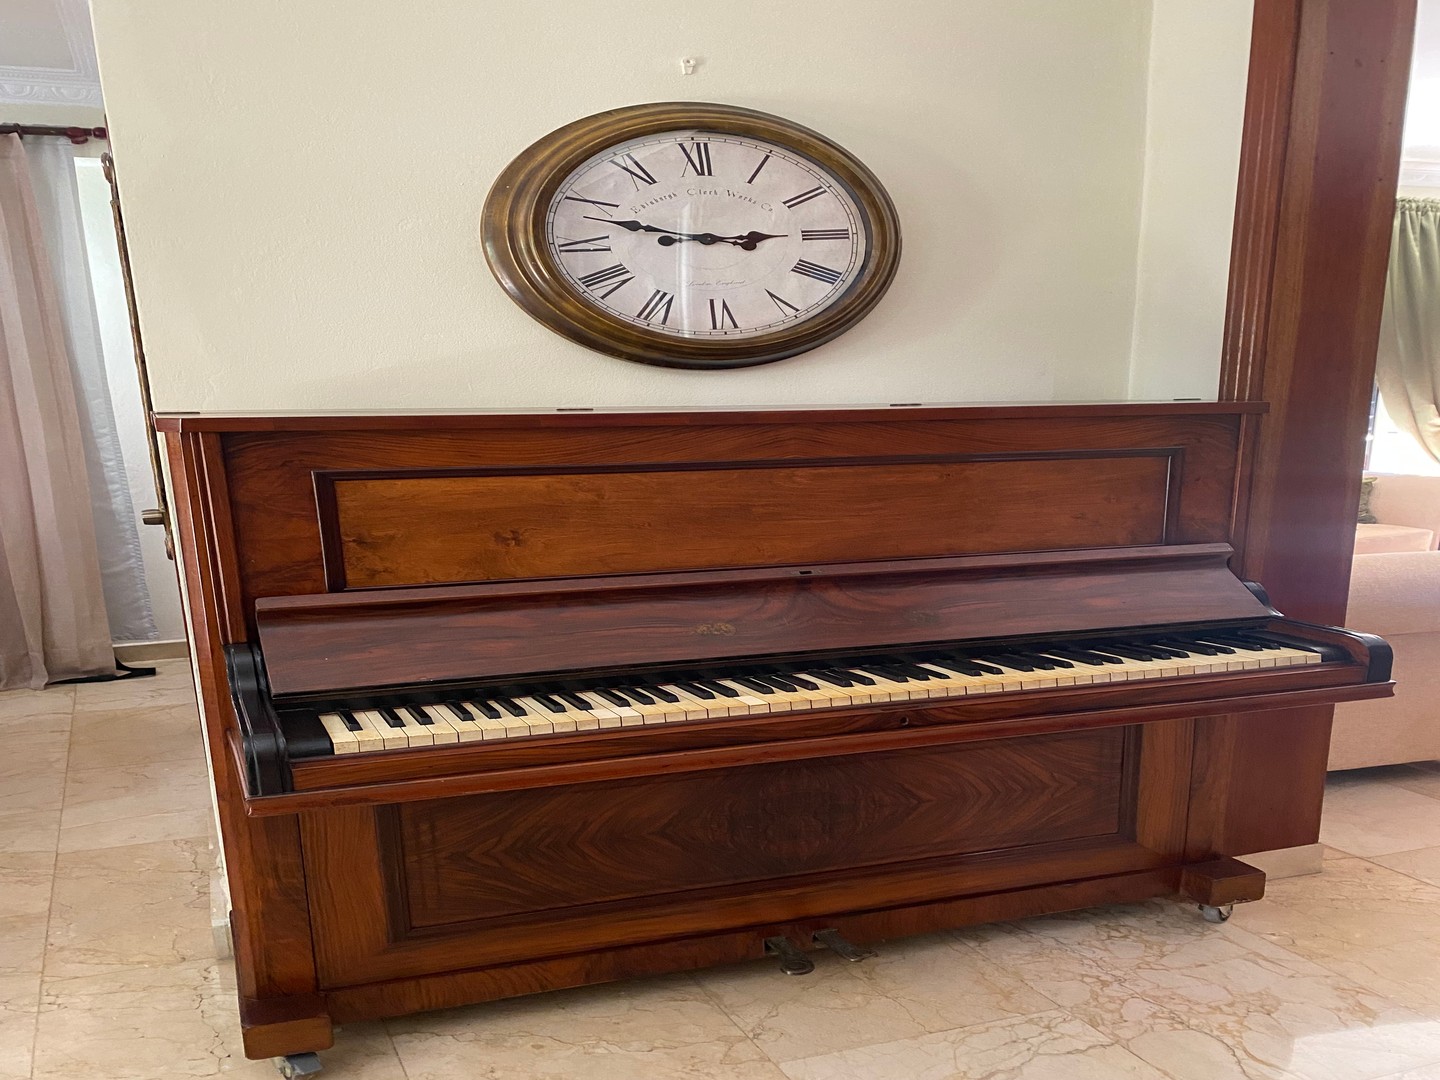 instrumentos musicales - Piano antiguo